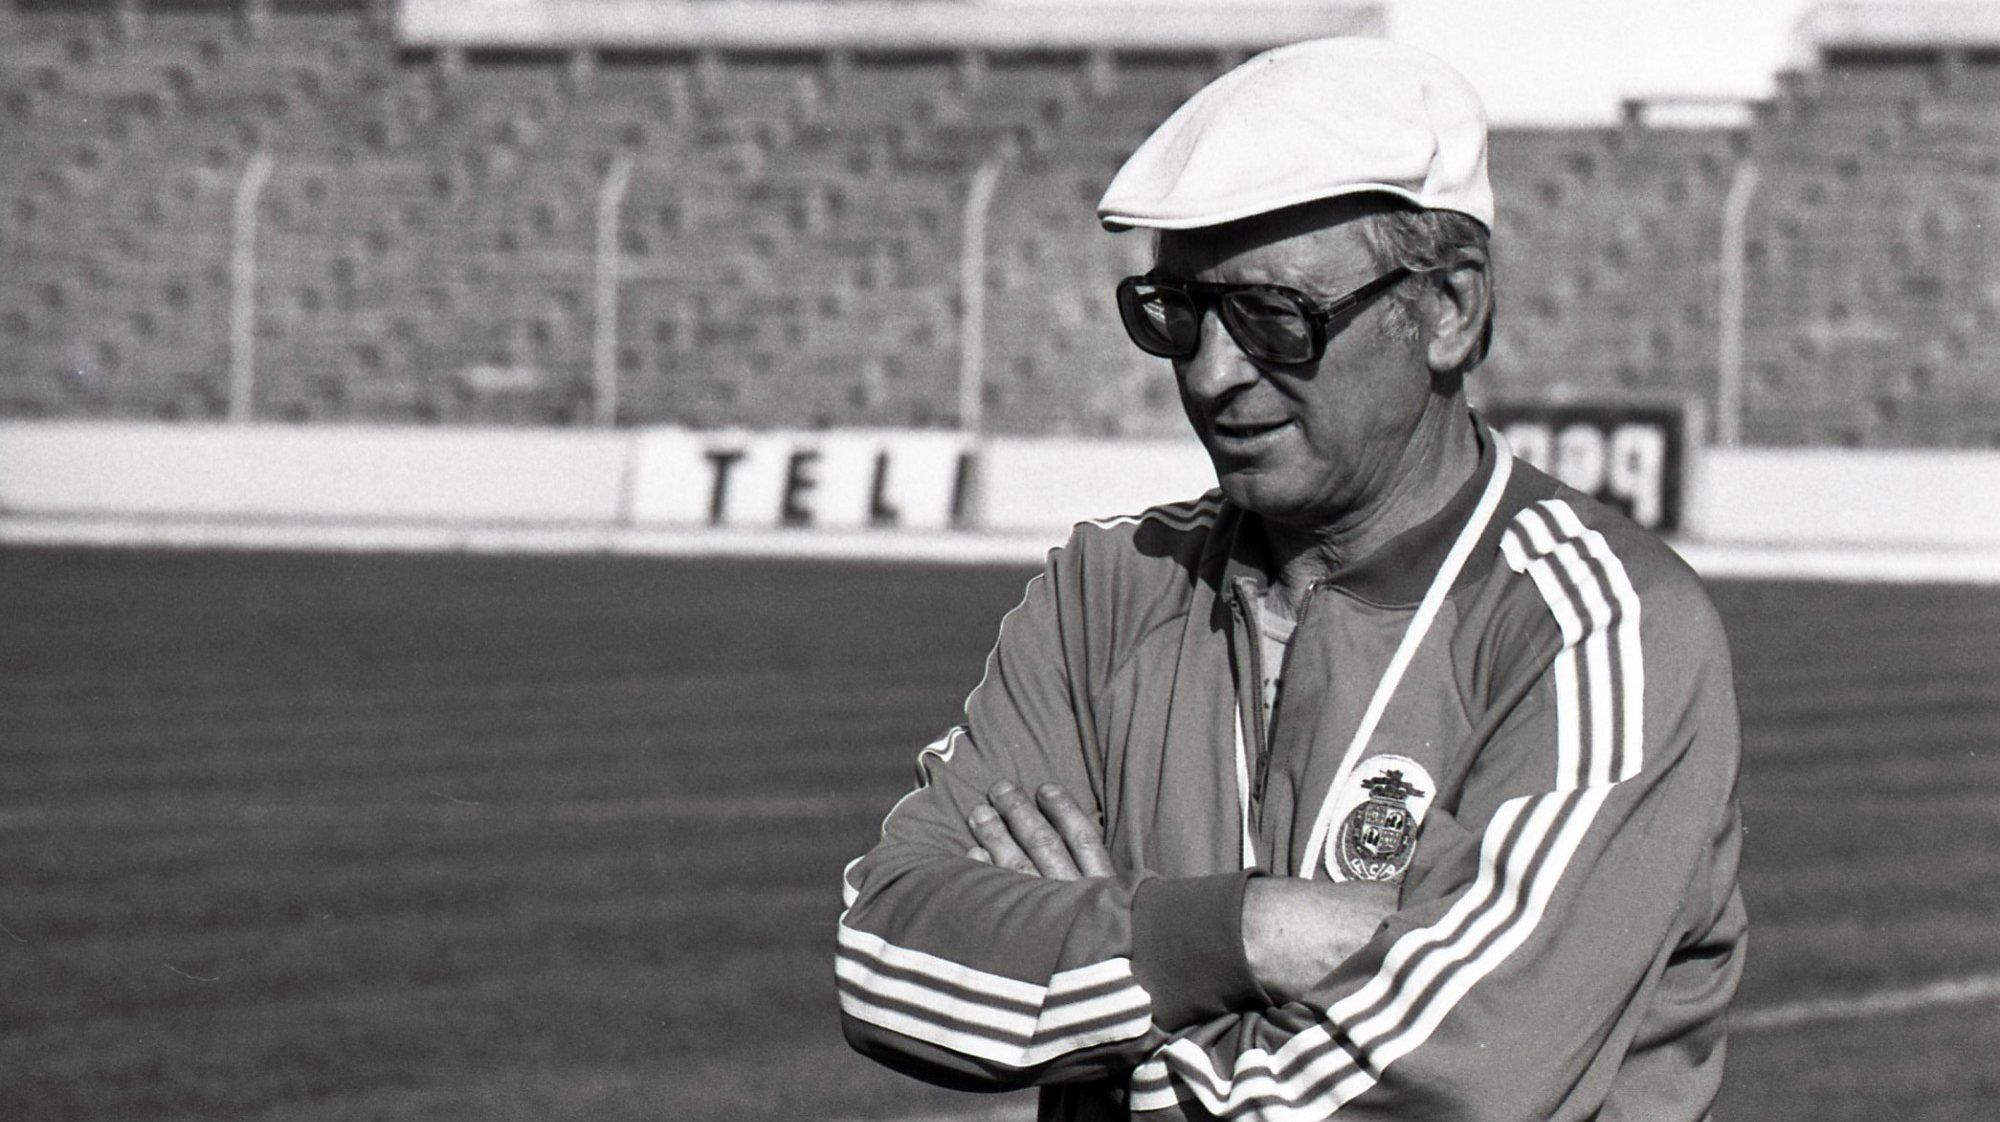 Pedroto conquistou duas edições da I Liga e duas Taças de Portugal nos relvados (1952-1960), antes de somar três passagens pelo banco (1966-1969, 1976-1980 e 1982-1984), juntando um 'bicampeonato' nacional, três Taças e uma Supertaça Cândido de Oliveira